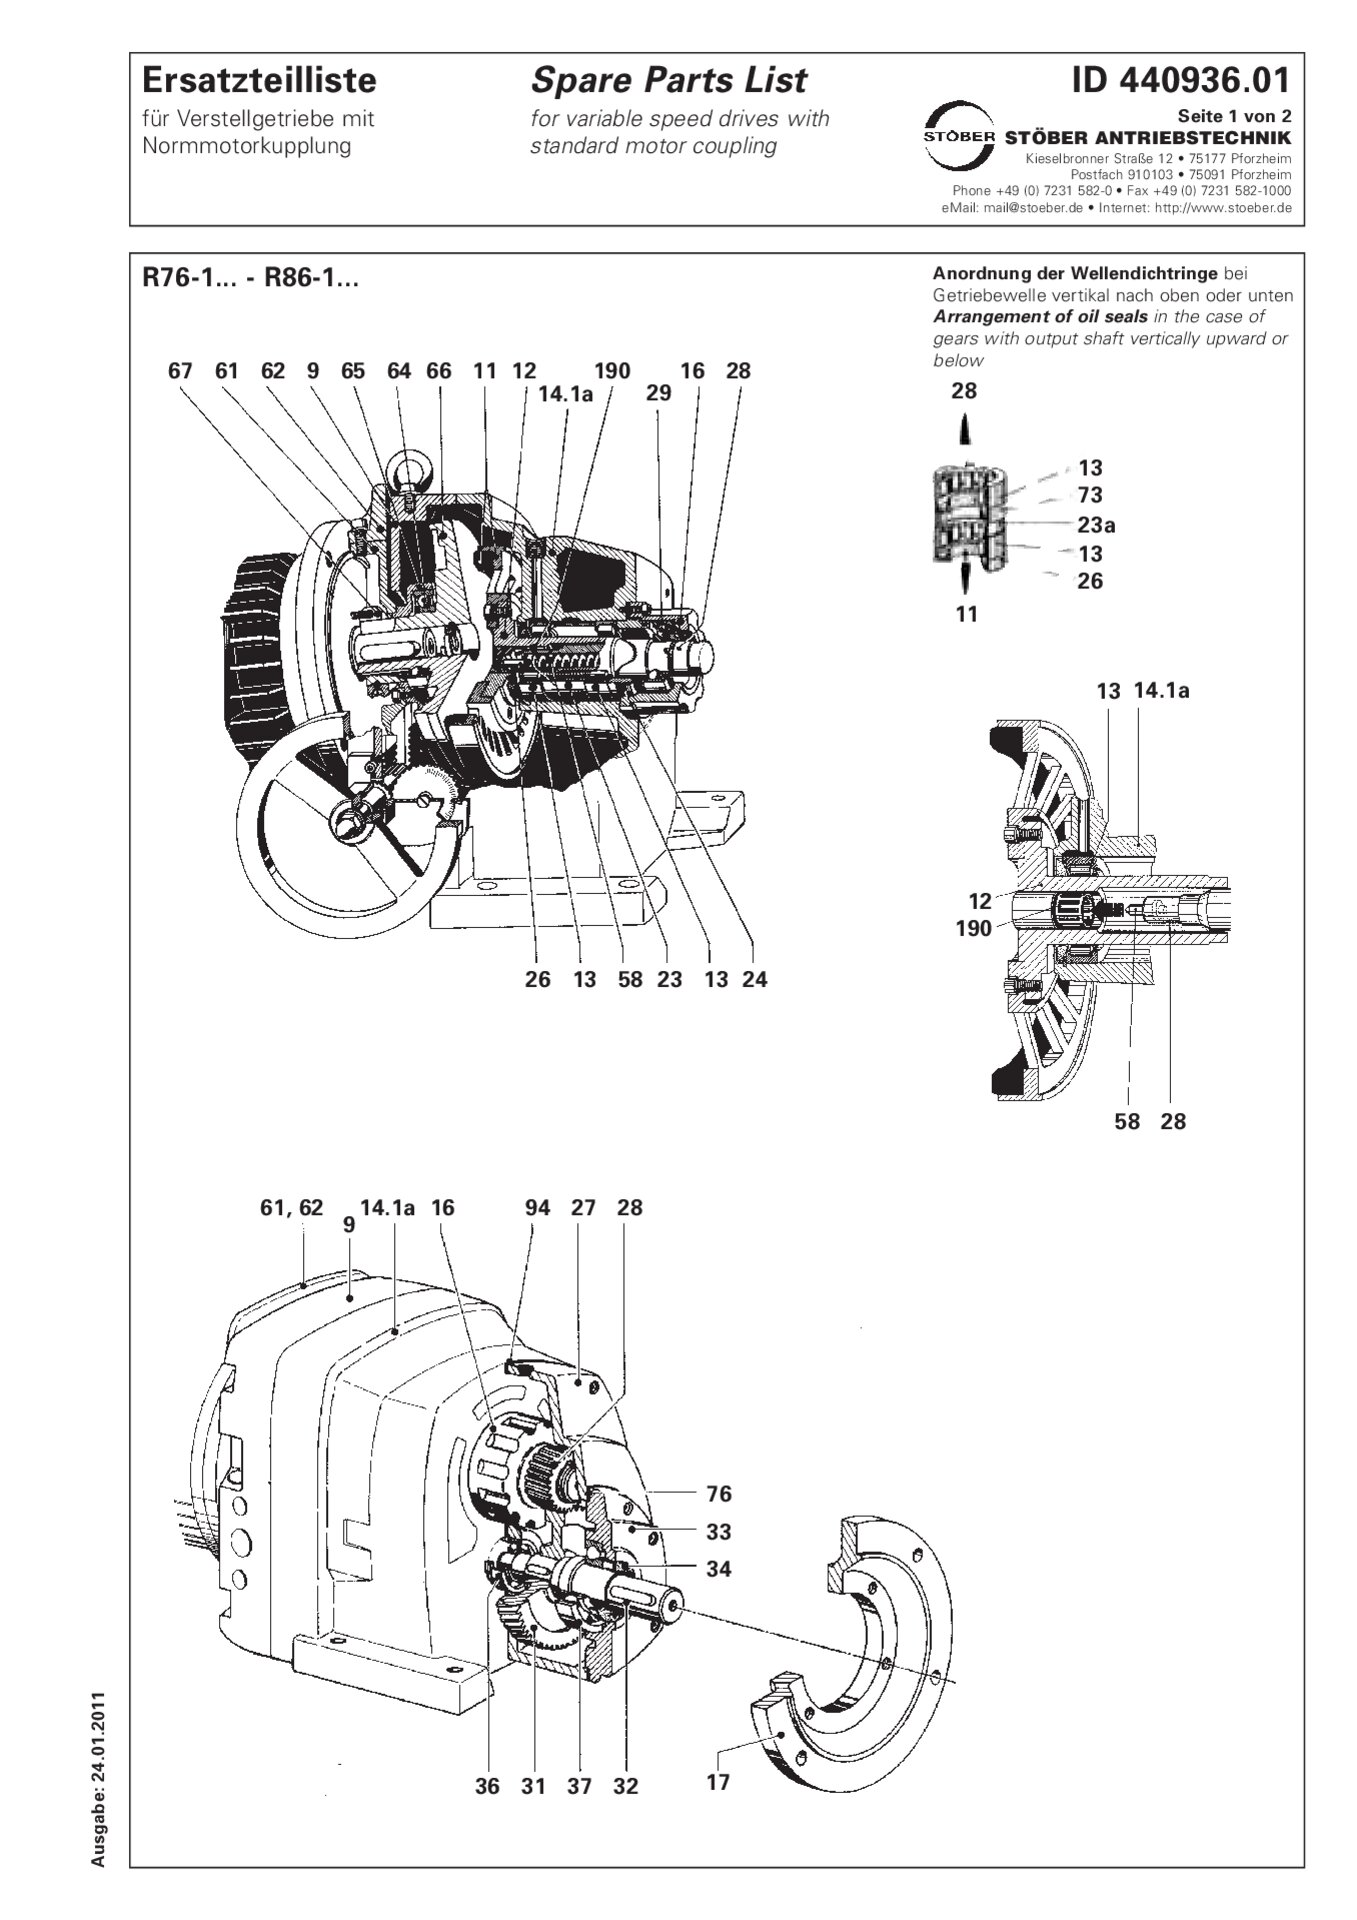 Listino dei pezzi di ricambio R76-1/R86-1 con accoppiamento motore standard